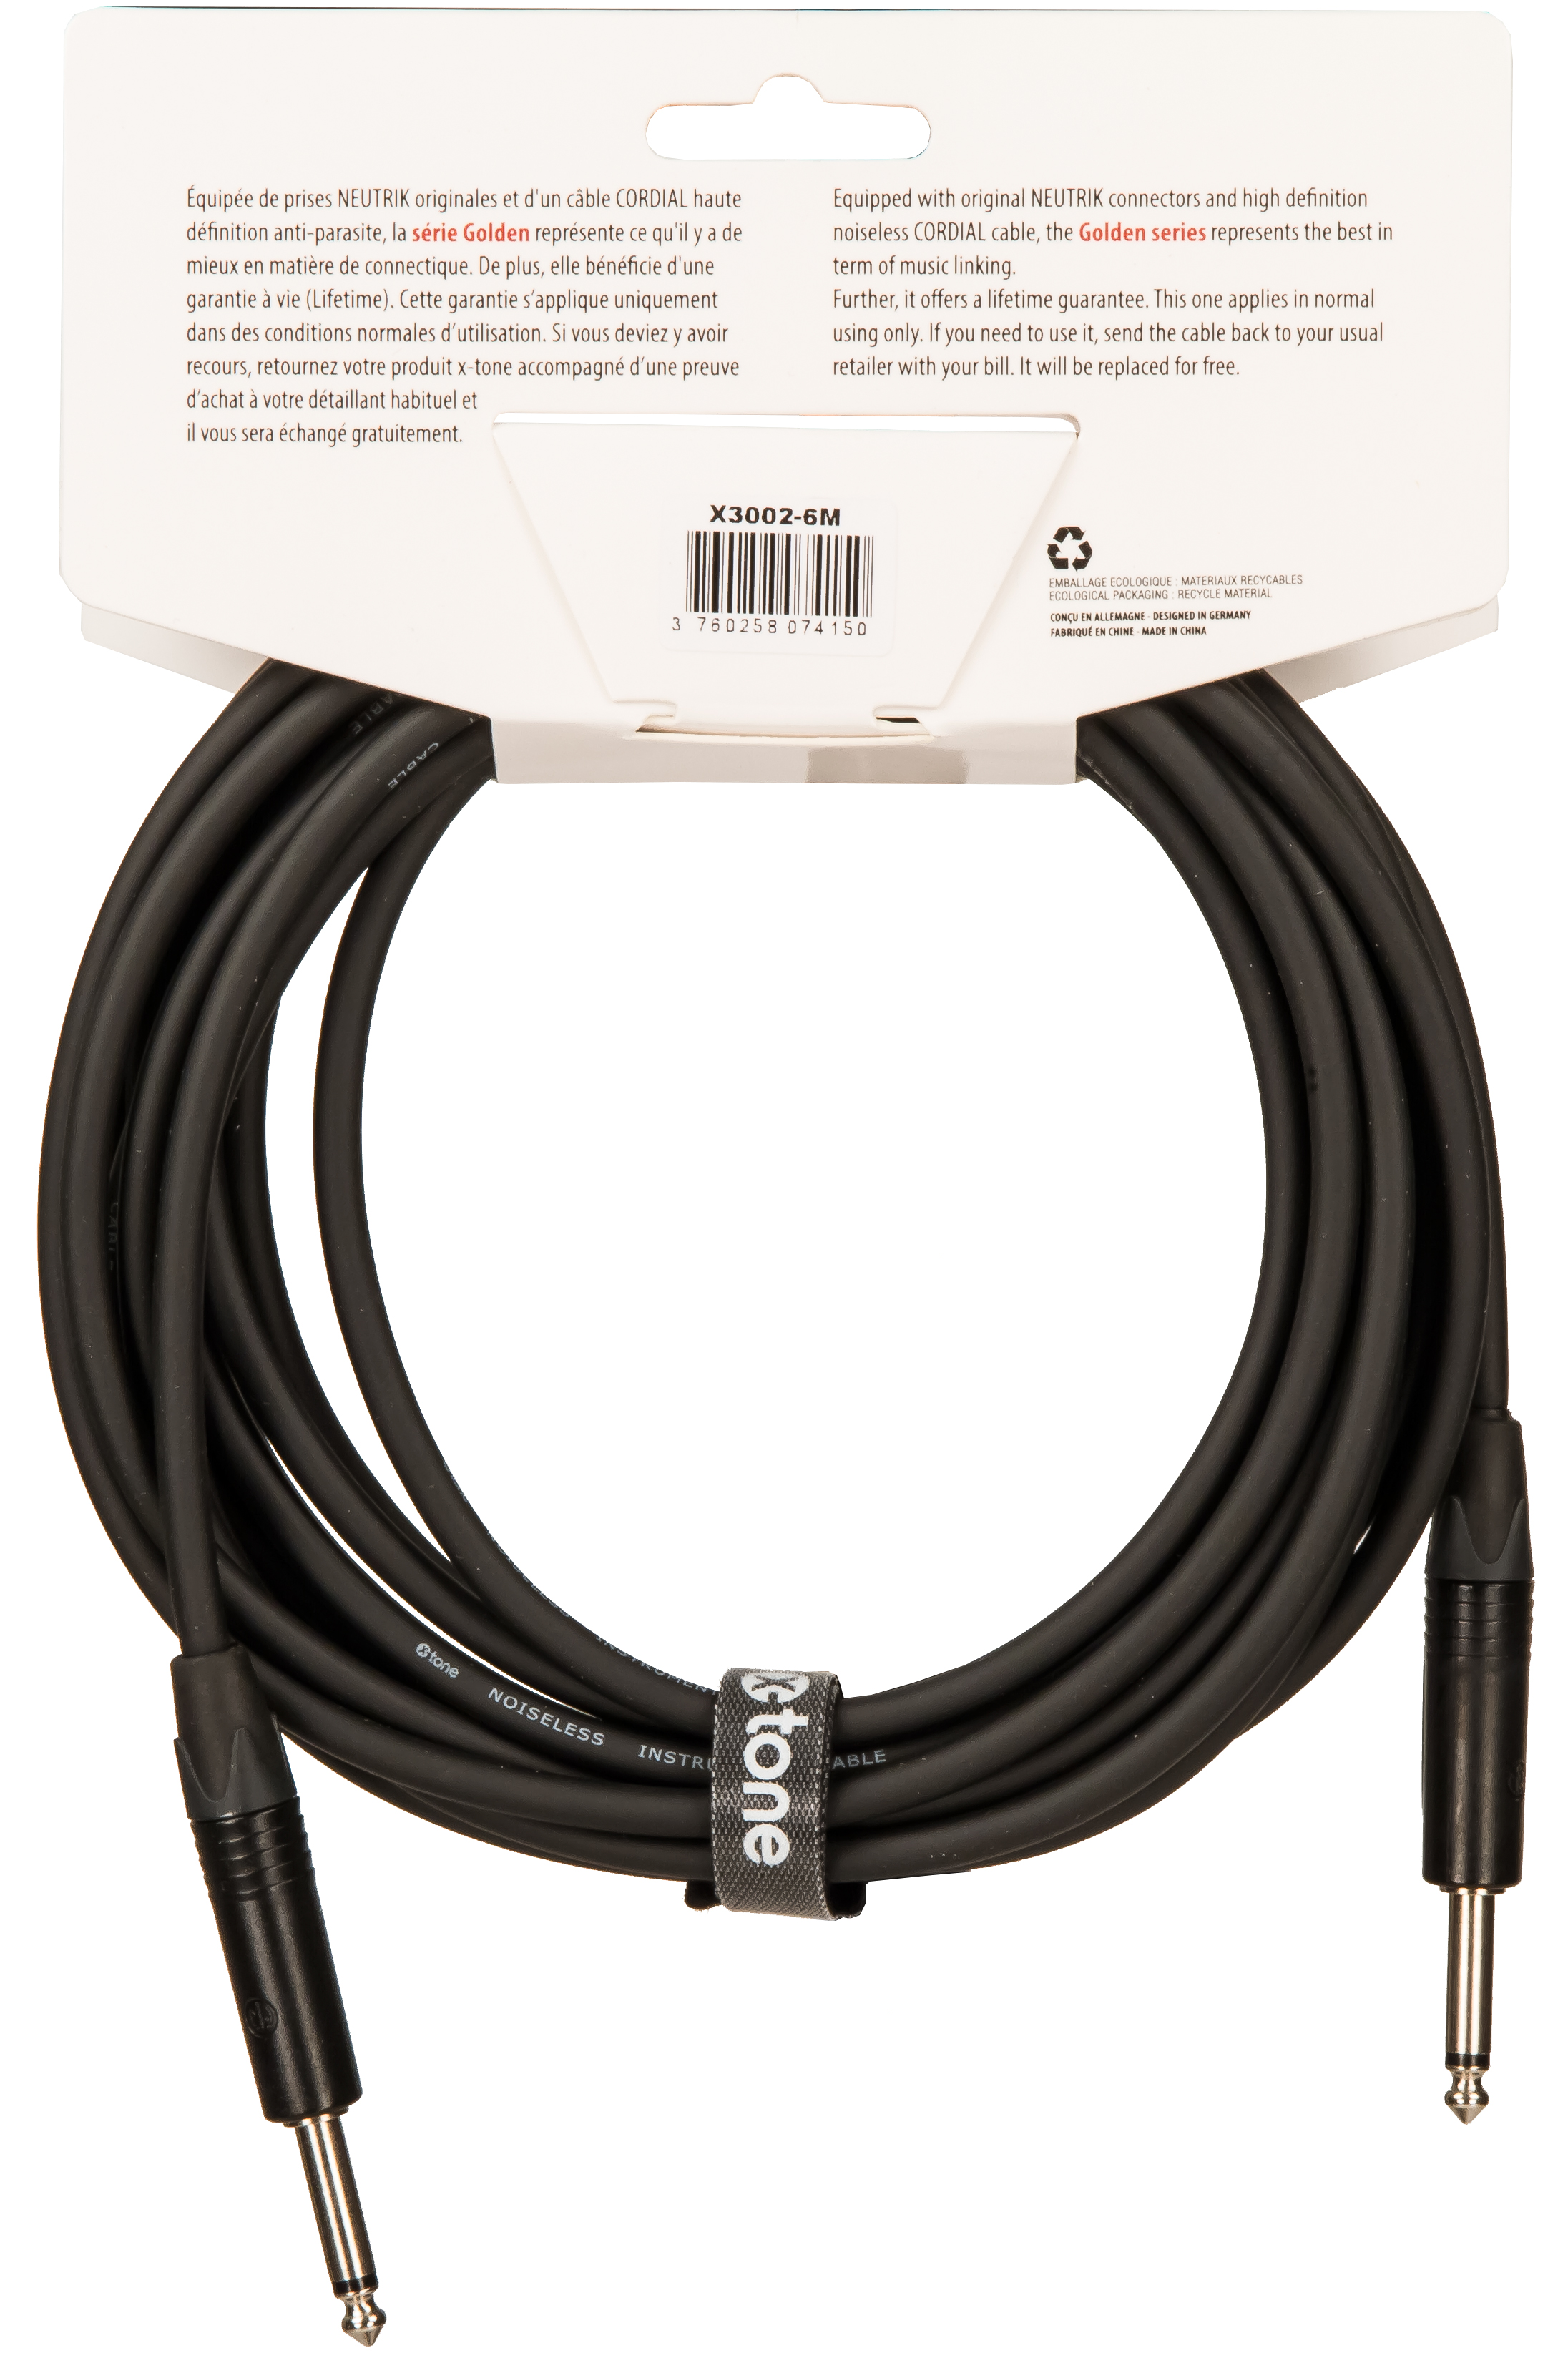 X-tone X3002-6m Instrument Cable Golden Series Neutrik Droit/droit 6m - Kabel - Variation 1